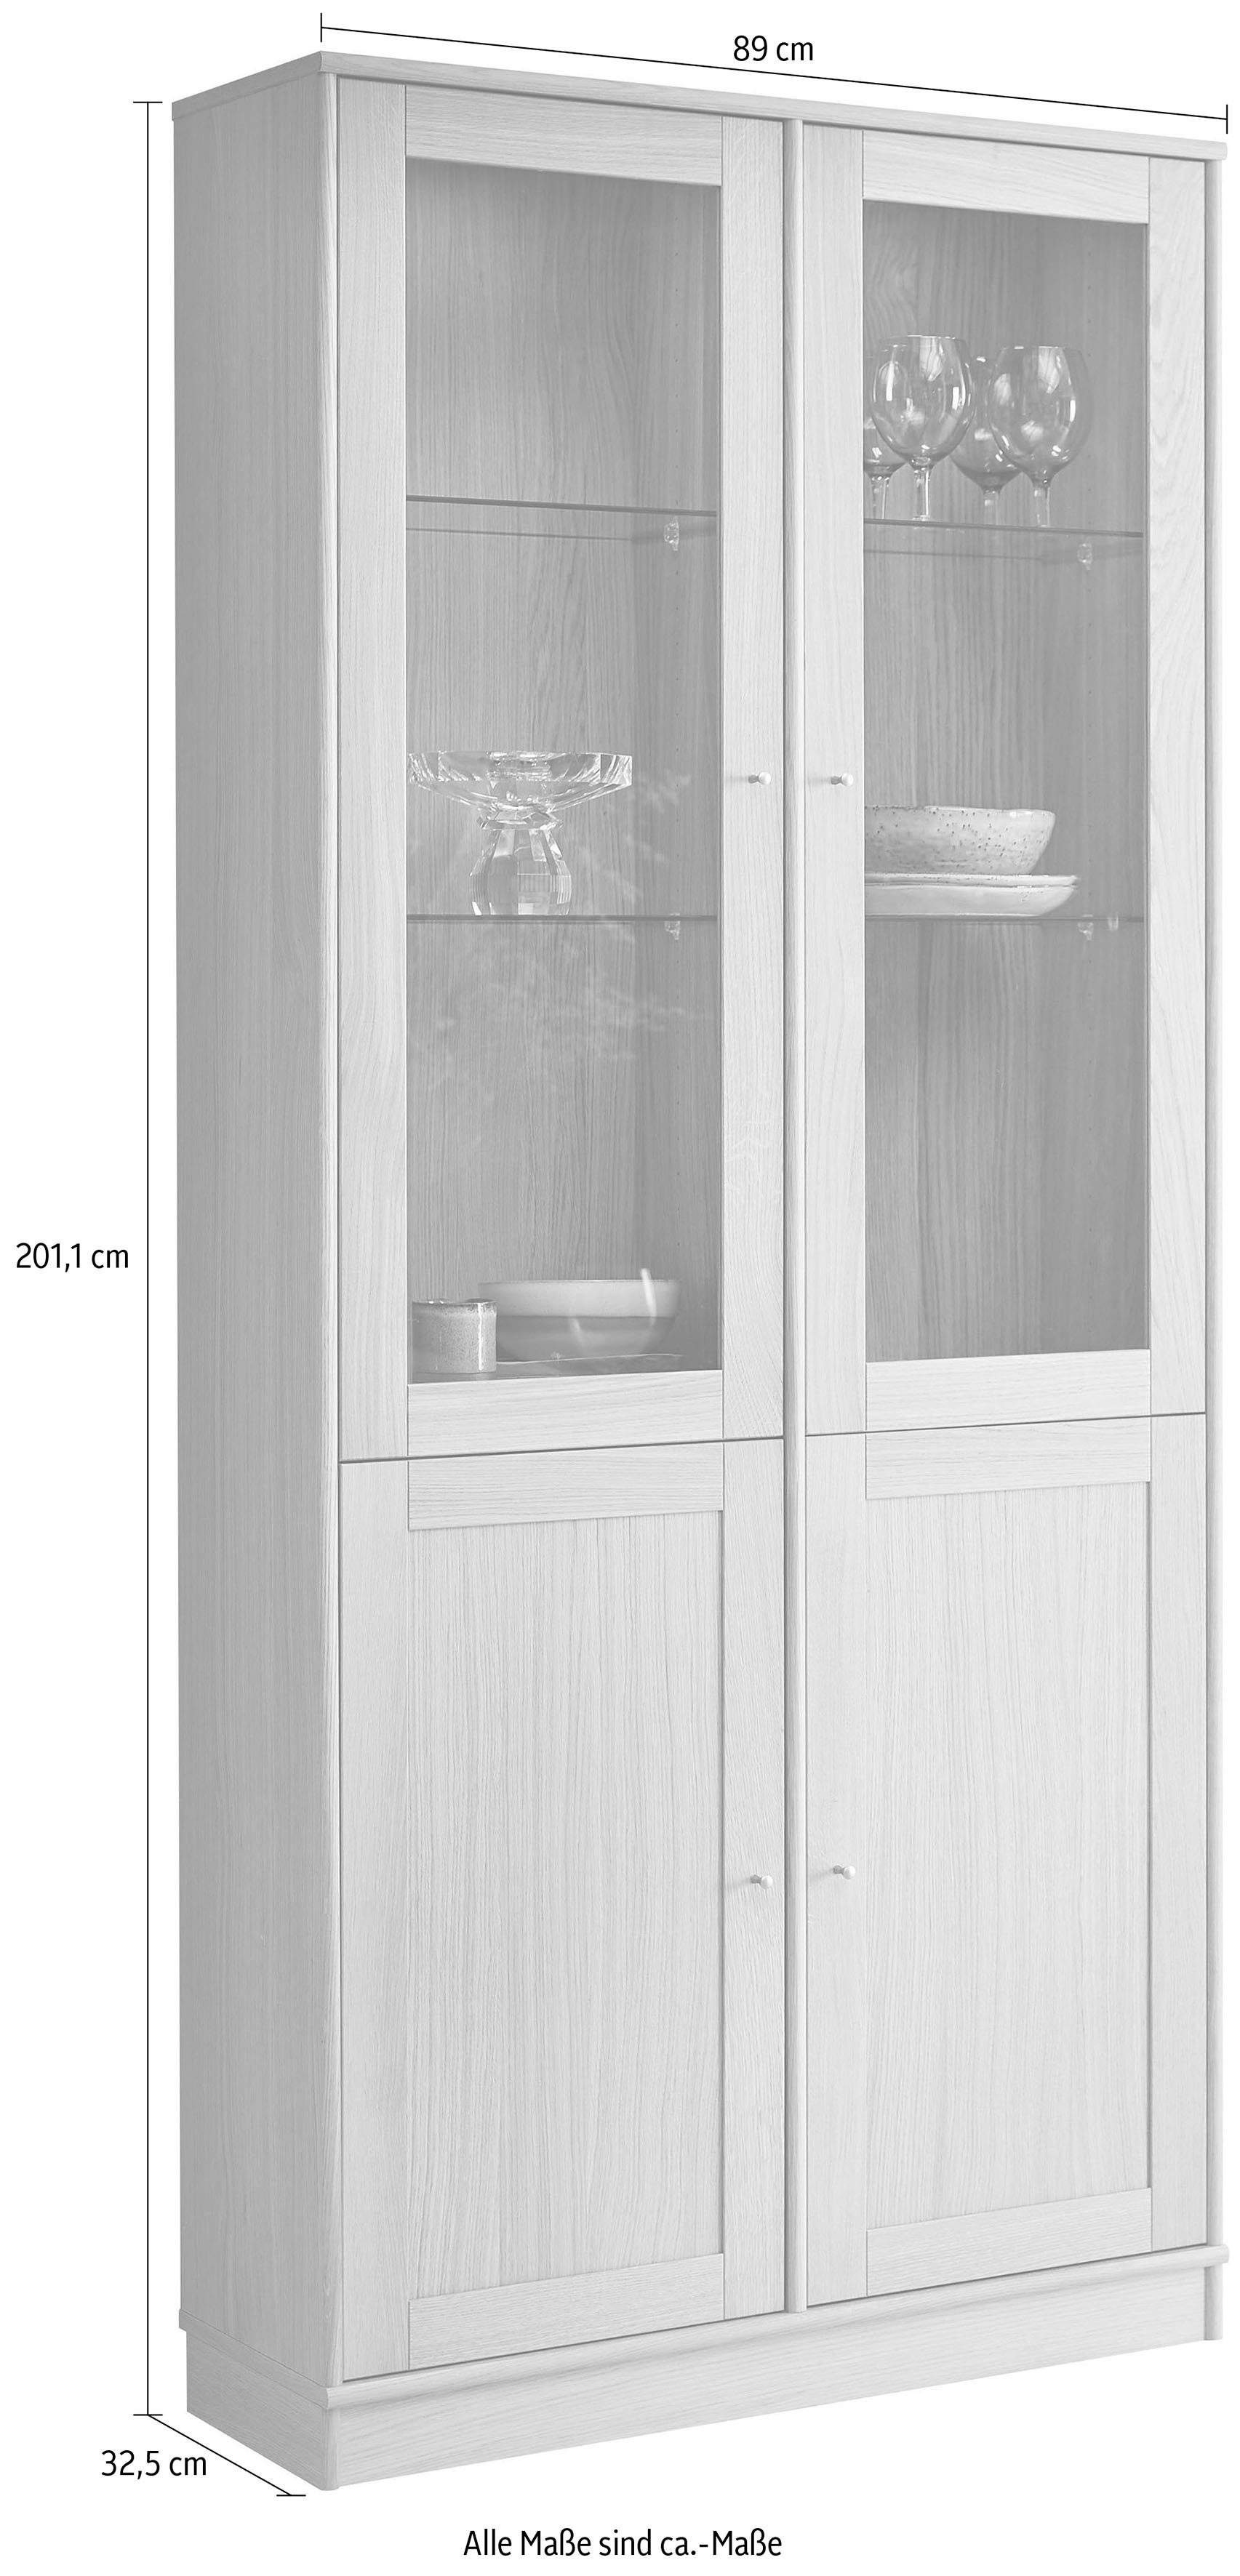 Hammel Furniture TV-Schrank Mistral Glasschrank, Eichetüren, Glas- Standvitrine und B: Eiche, mit Designmöbel anpassungsbar 89 cm